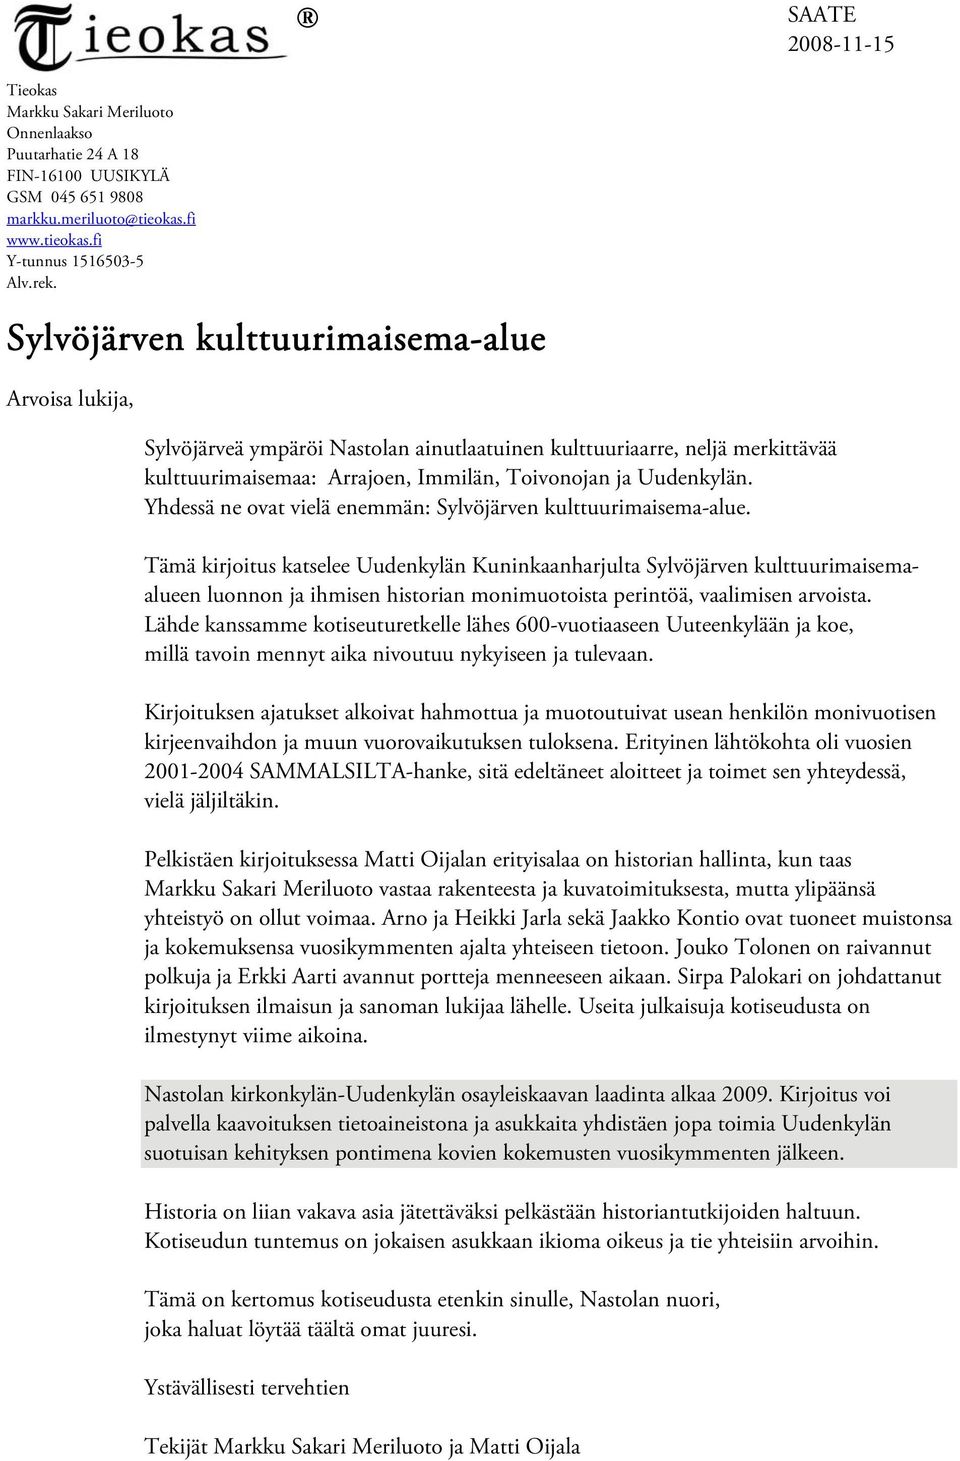 Yhdessä ne ovat vielä enemmän: Sylvöjärven kulttuurimaisema-alue.